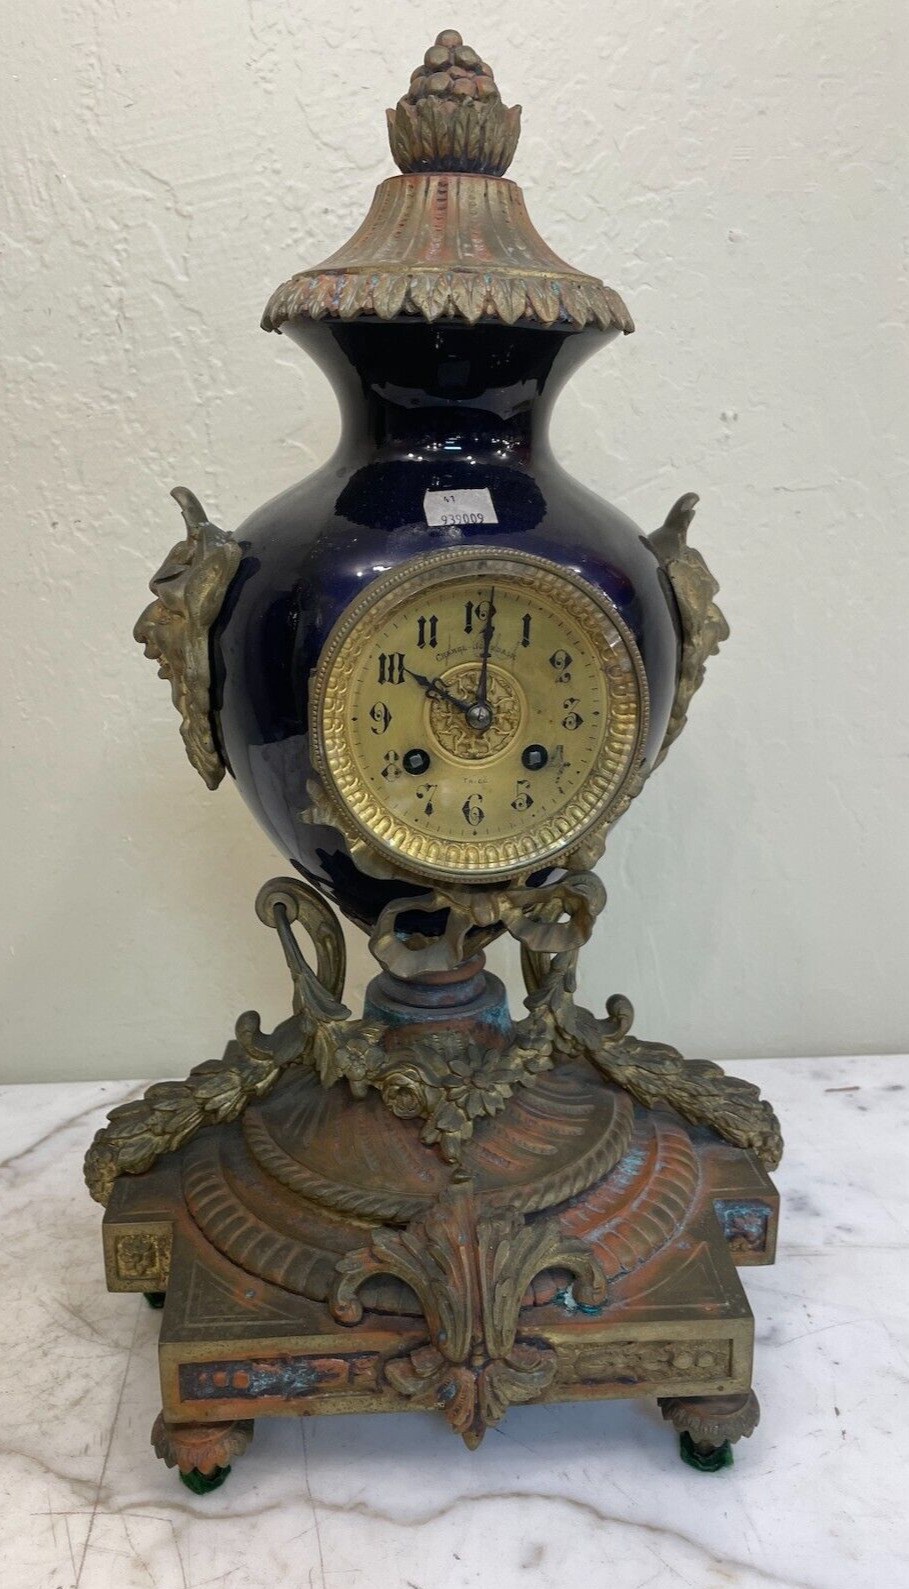 Antique Metal Clock - 19th Century